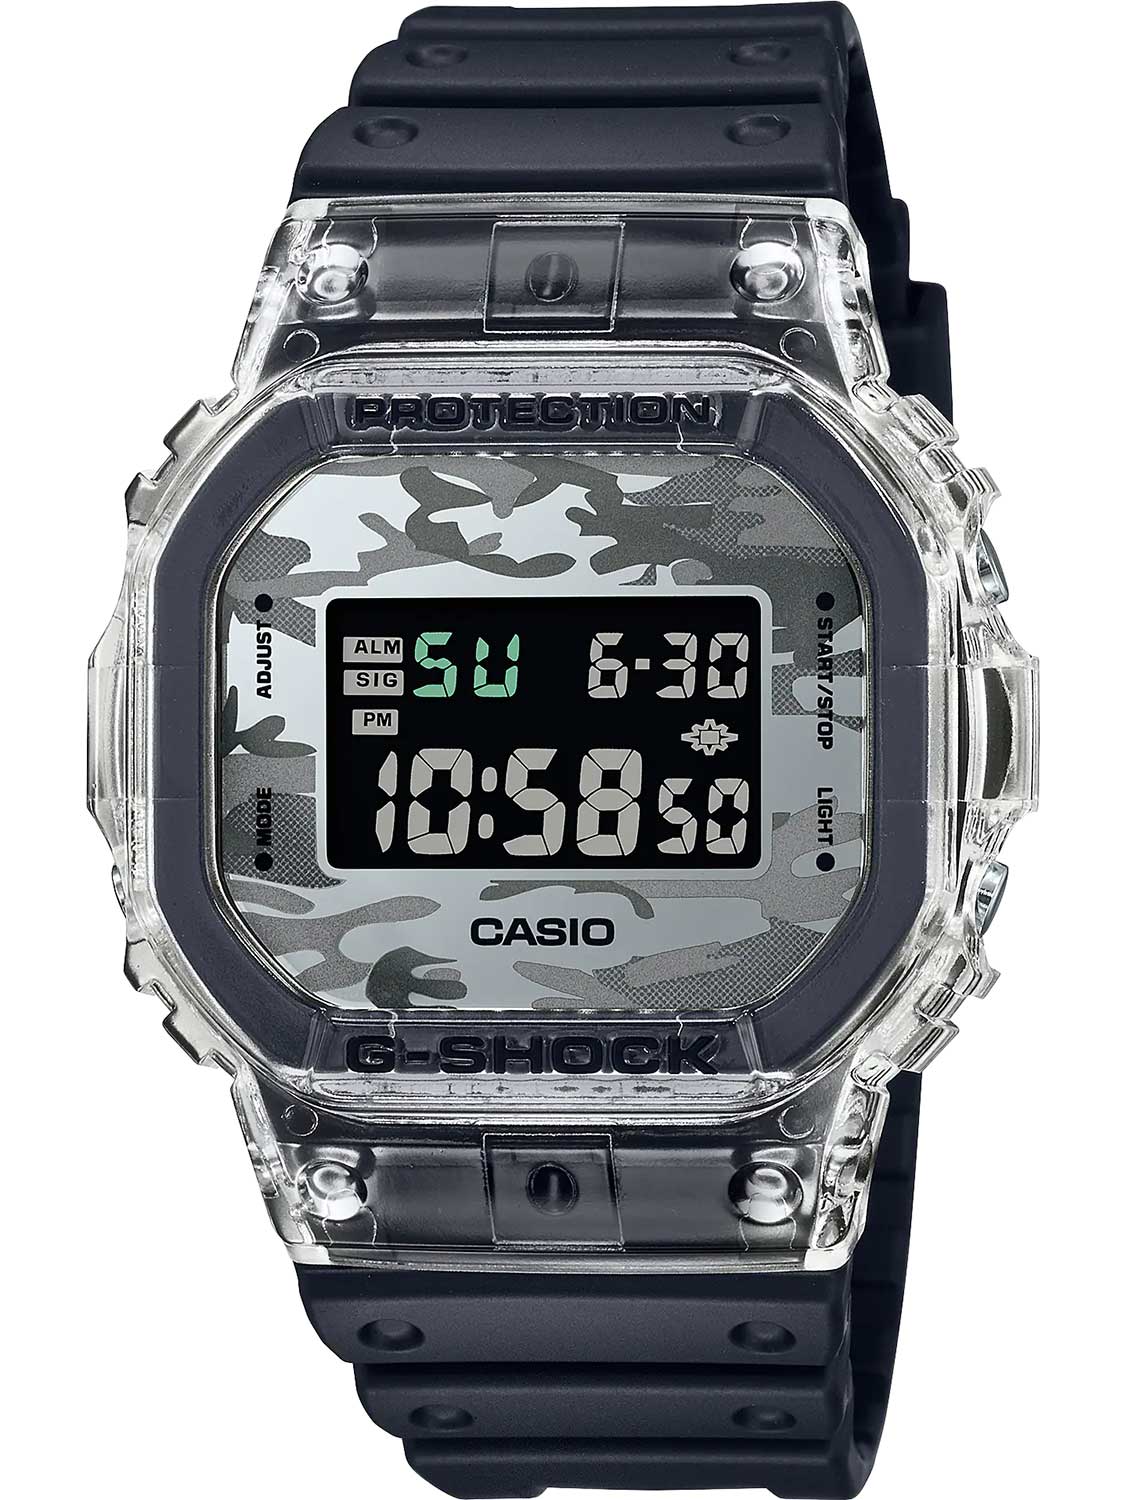 Японские наручные часы Casio G-SHOCK DW-5600SKC-1E с хронографом